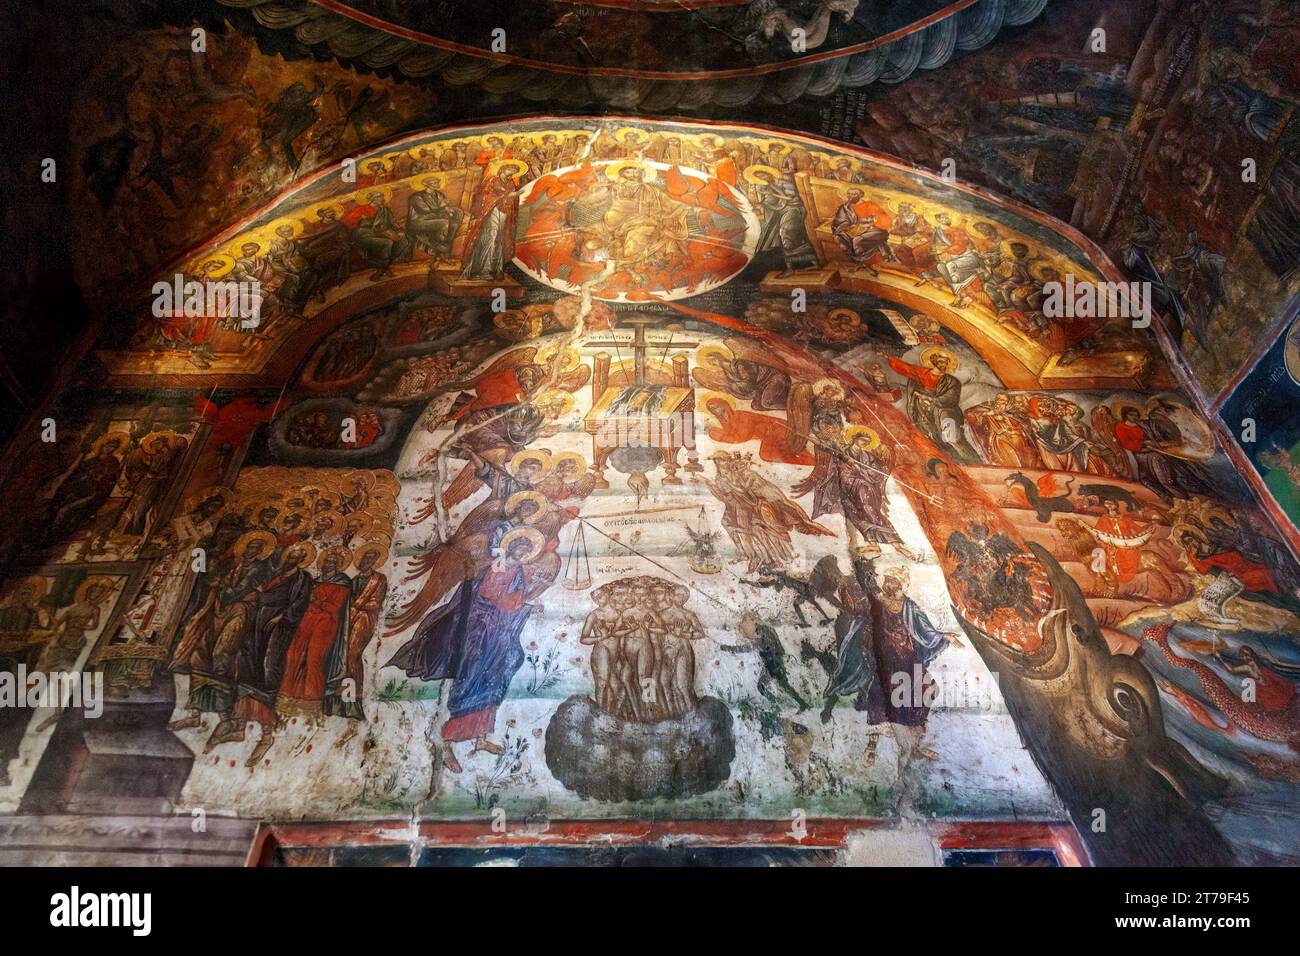 Splendida iconografia al Monastero dei Quaranta Martiri, un monastero greco-ortodosso vicino alla città di Sparta, nel Peloponneso, in Grecia, in Europa. Foto Stock